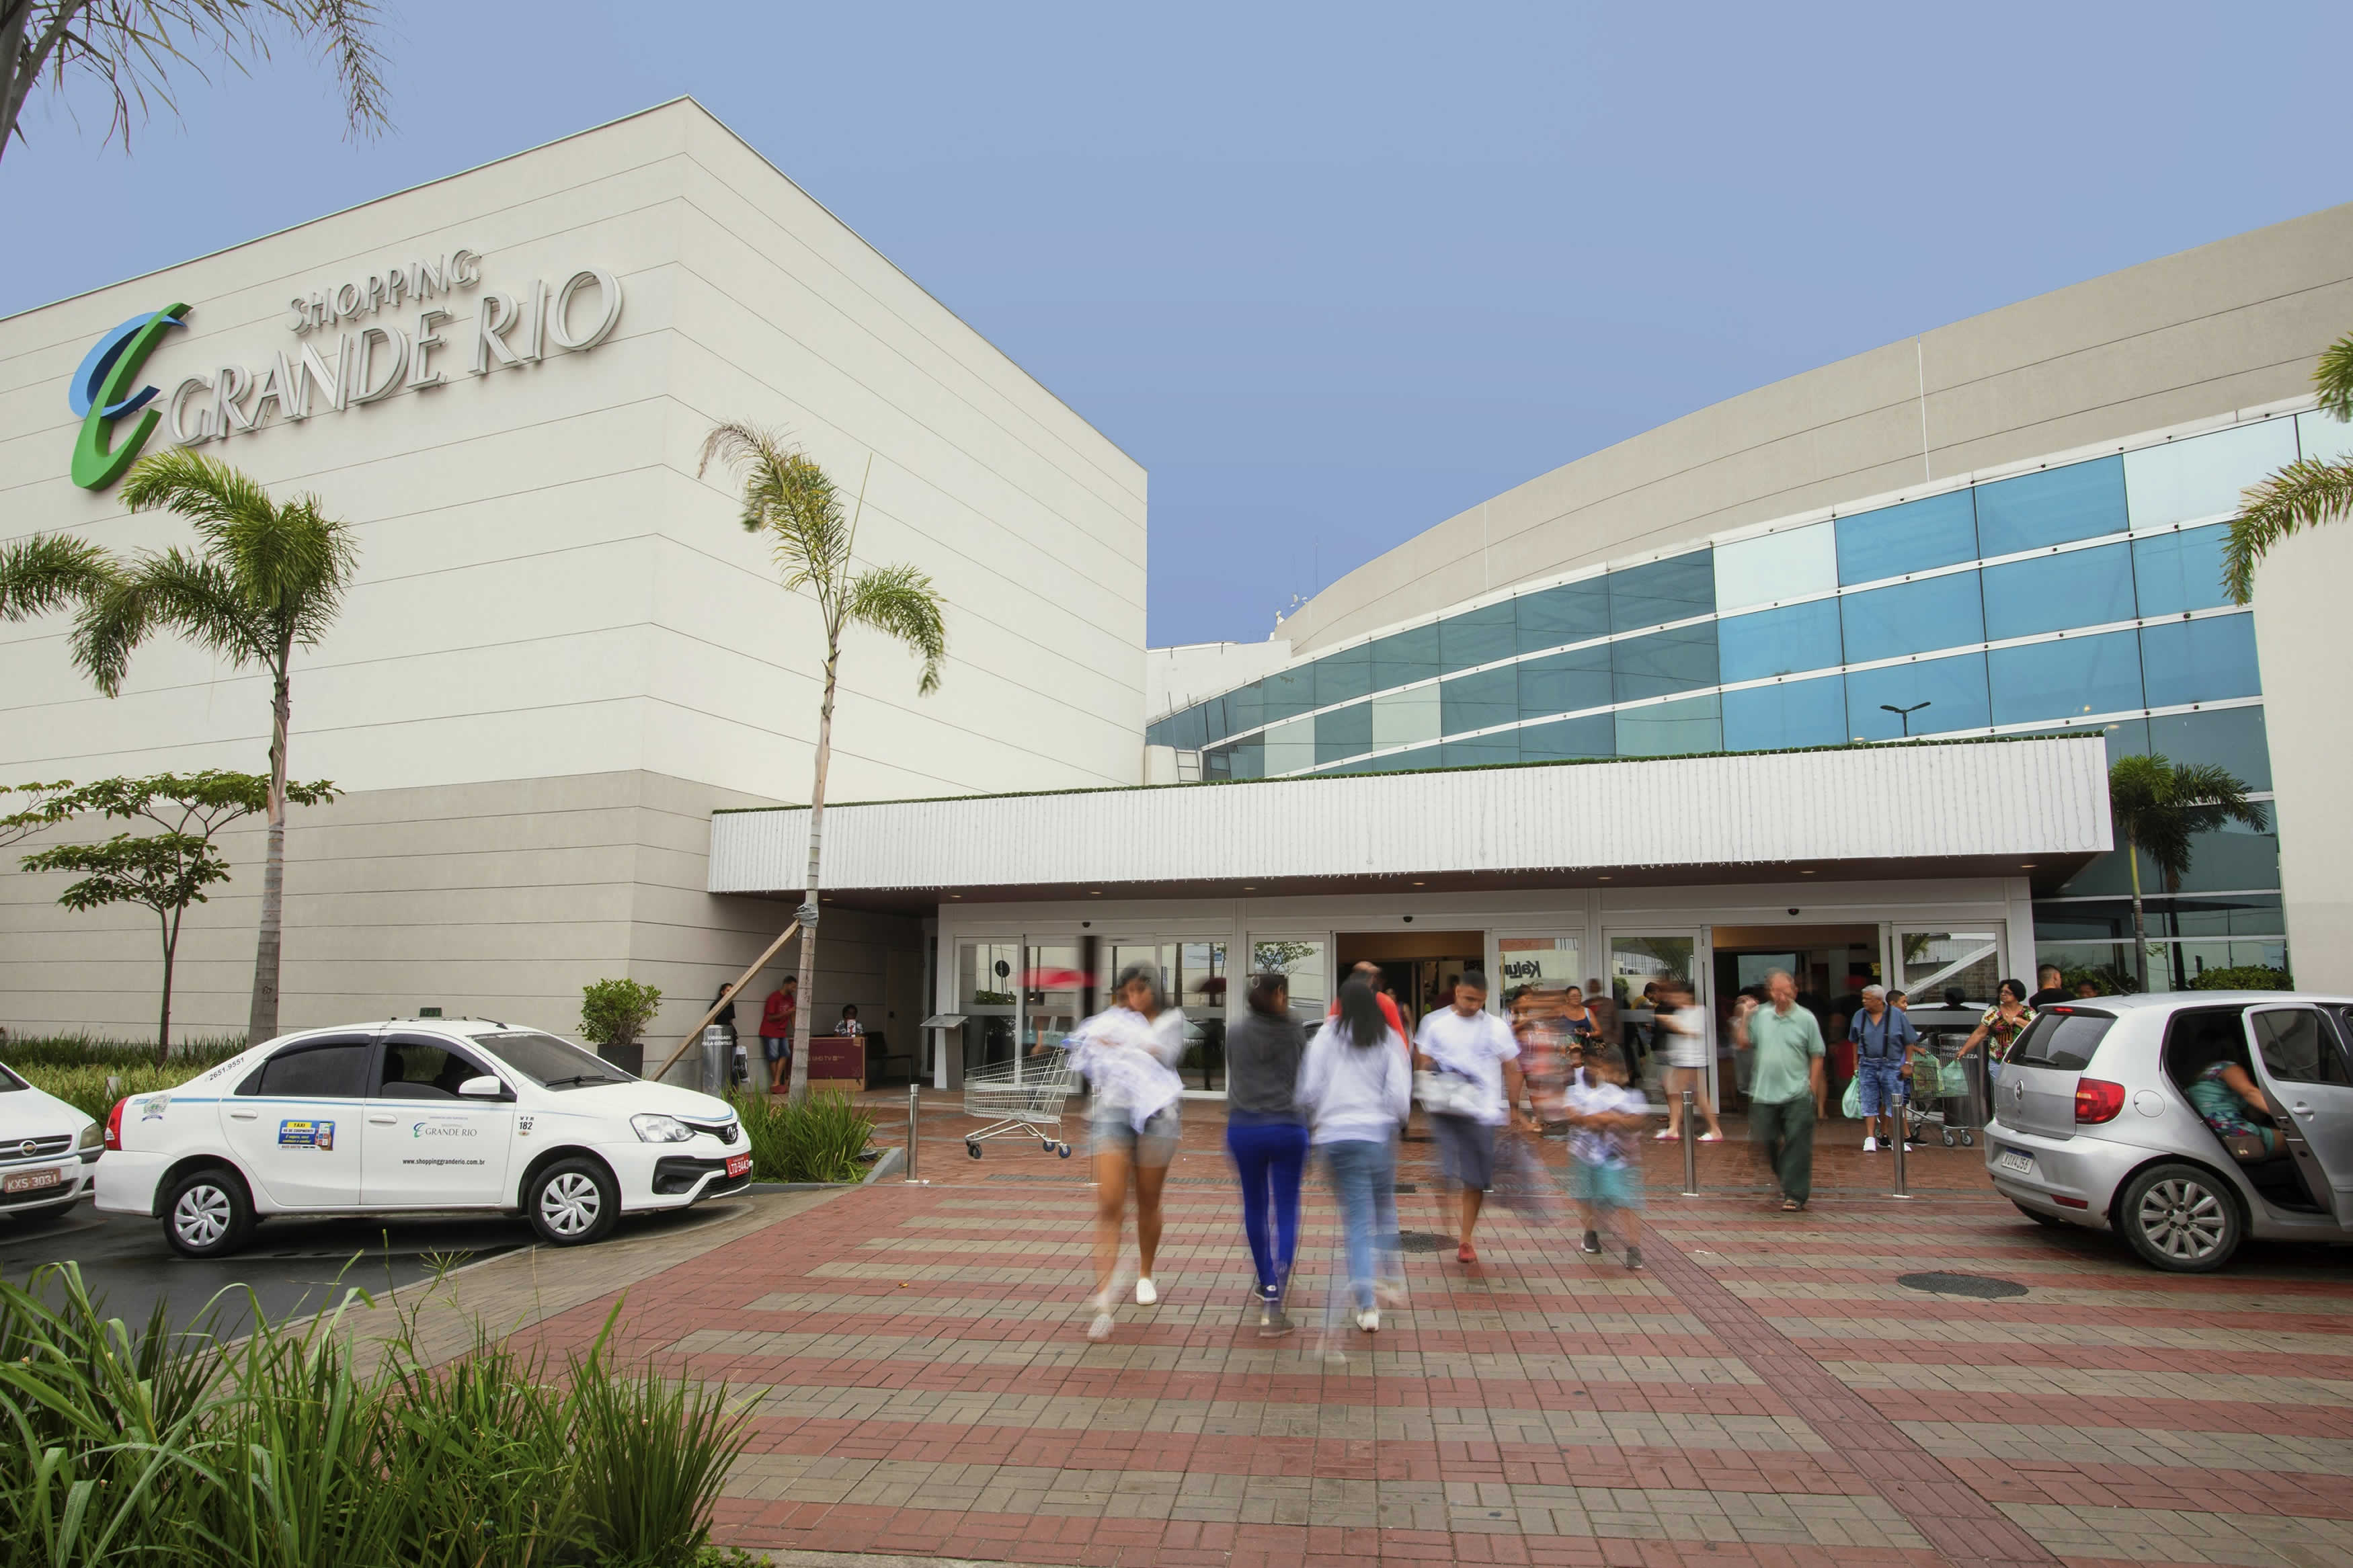 Shopping Grande Rio comemora dia de São Judas Tadeu em formato inédito